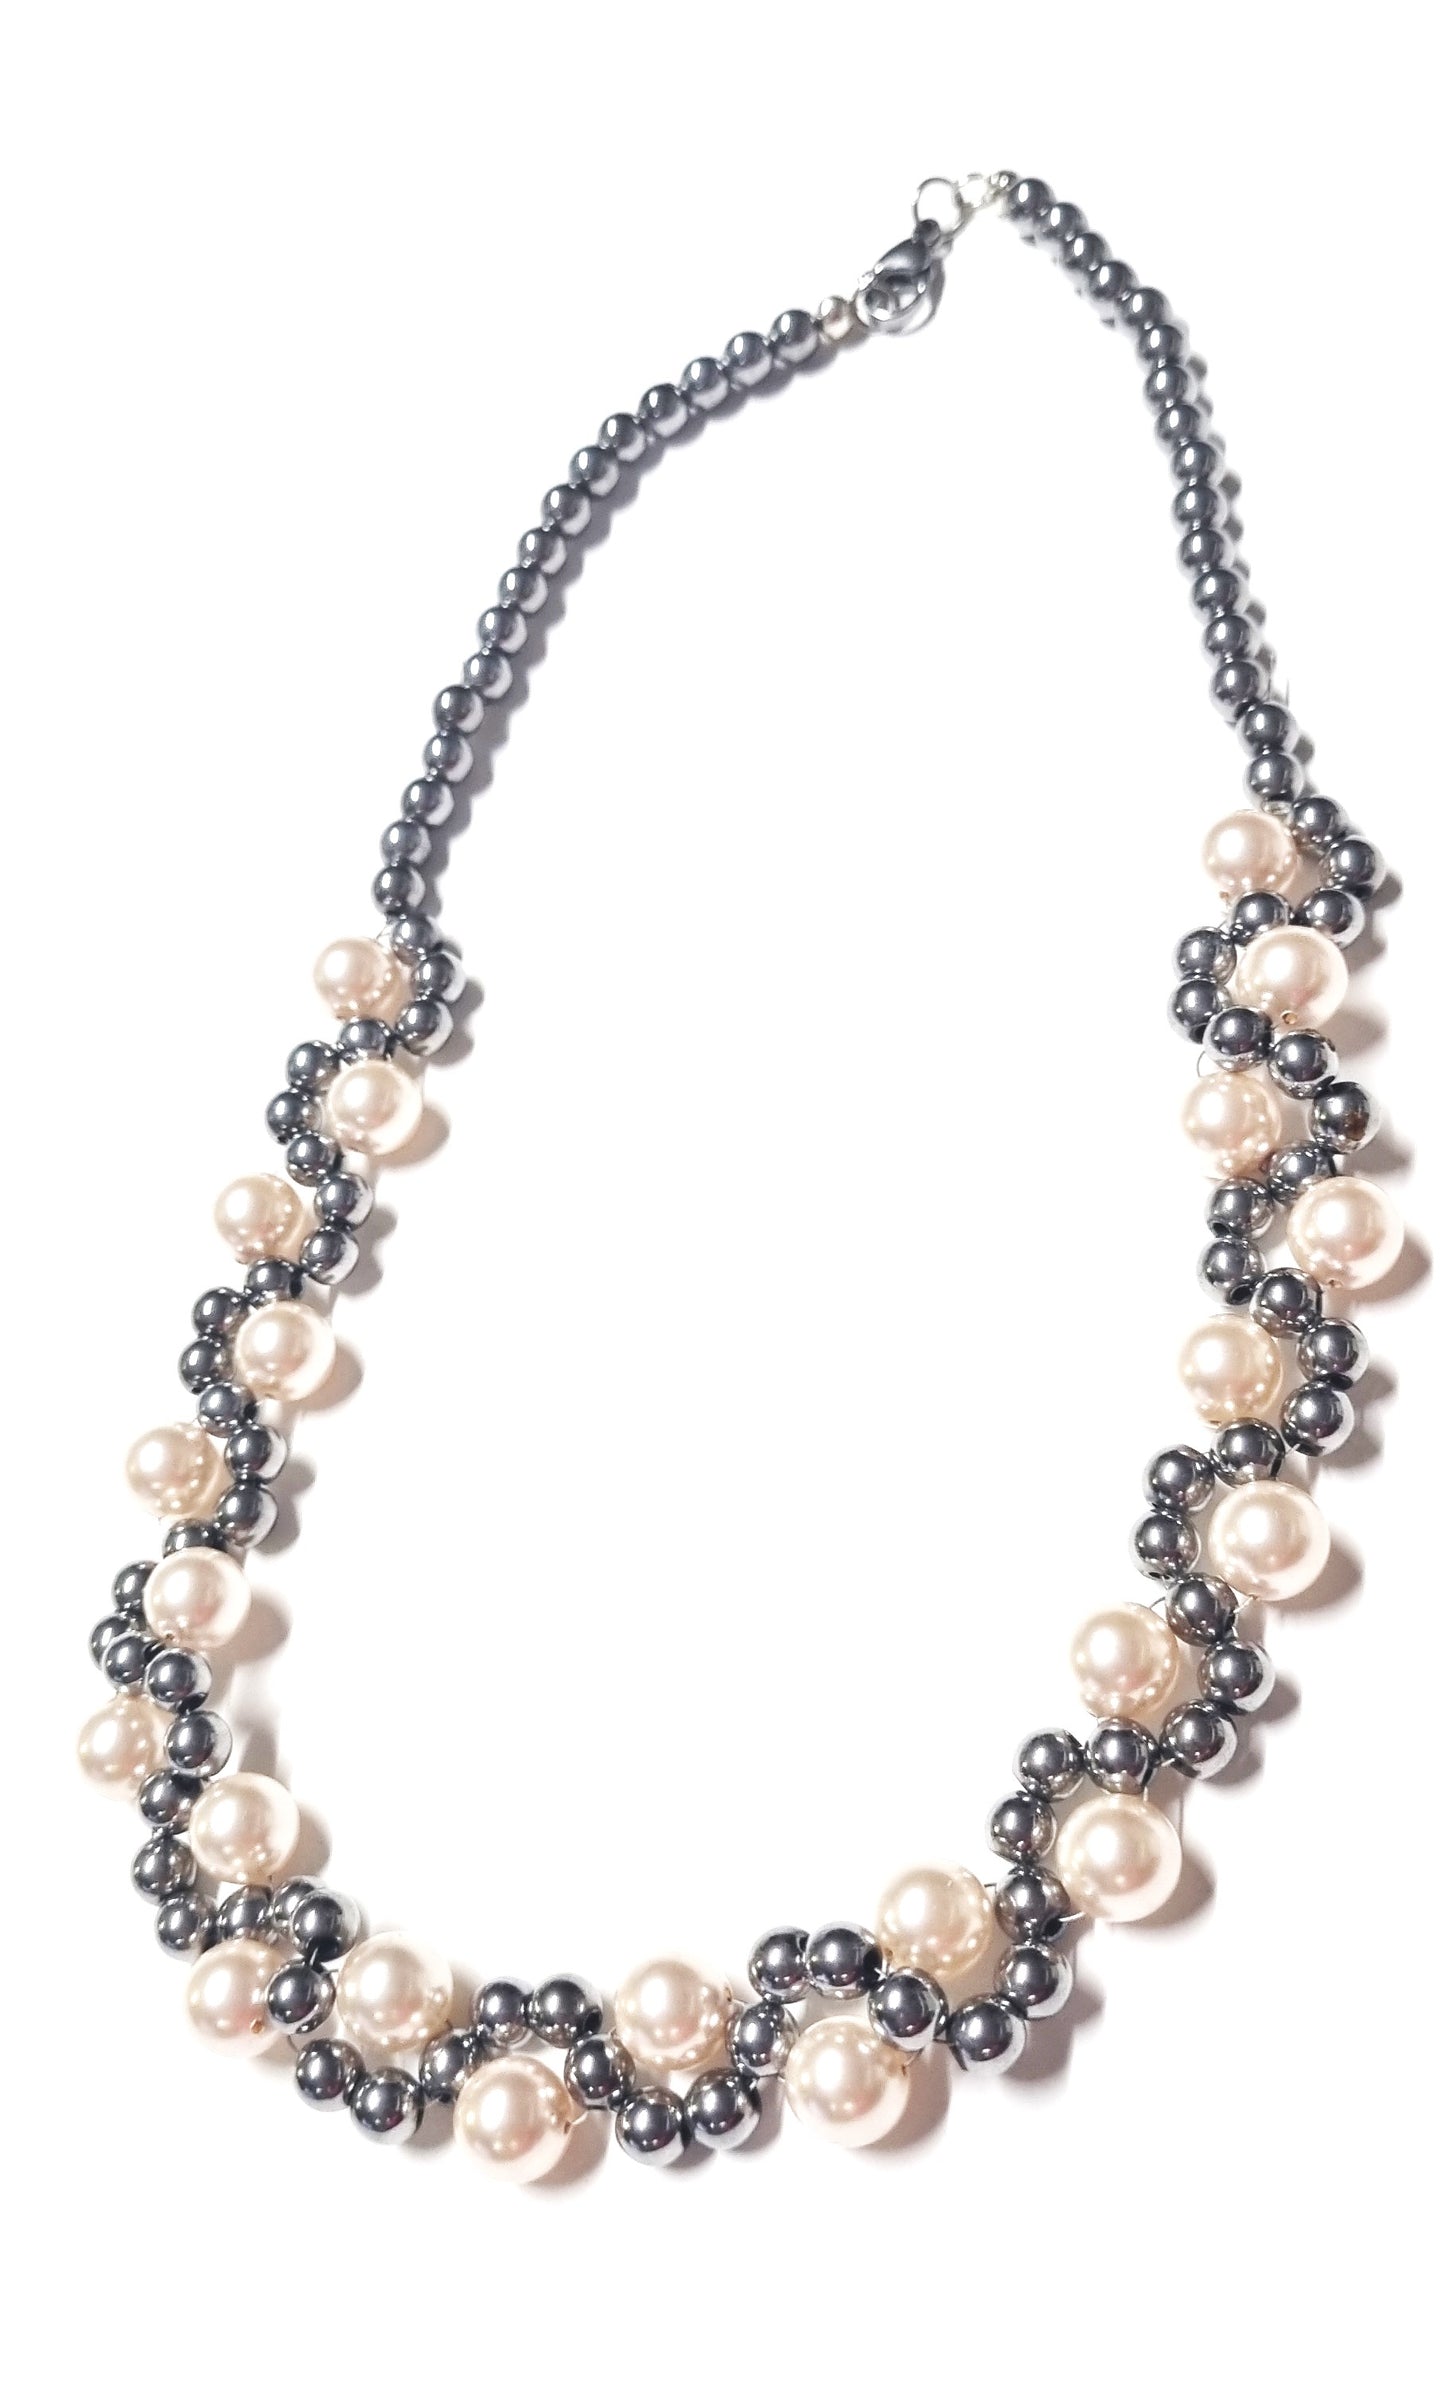 Bracciale LE PERLE .057 perline grigio lucido ematite, montate a spirale con perle cristallo